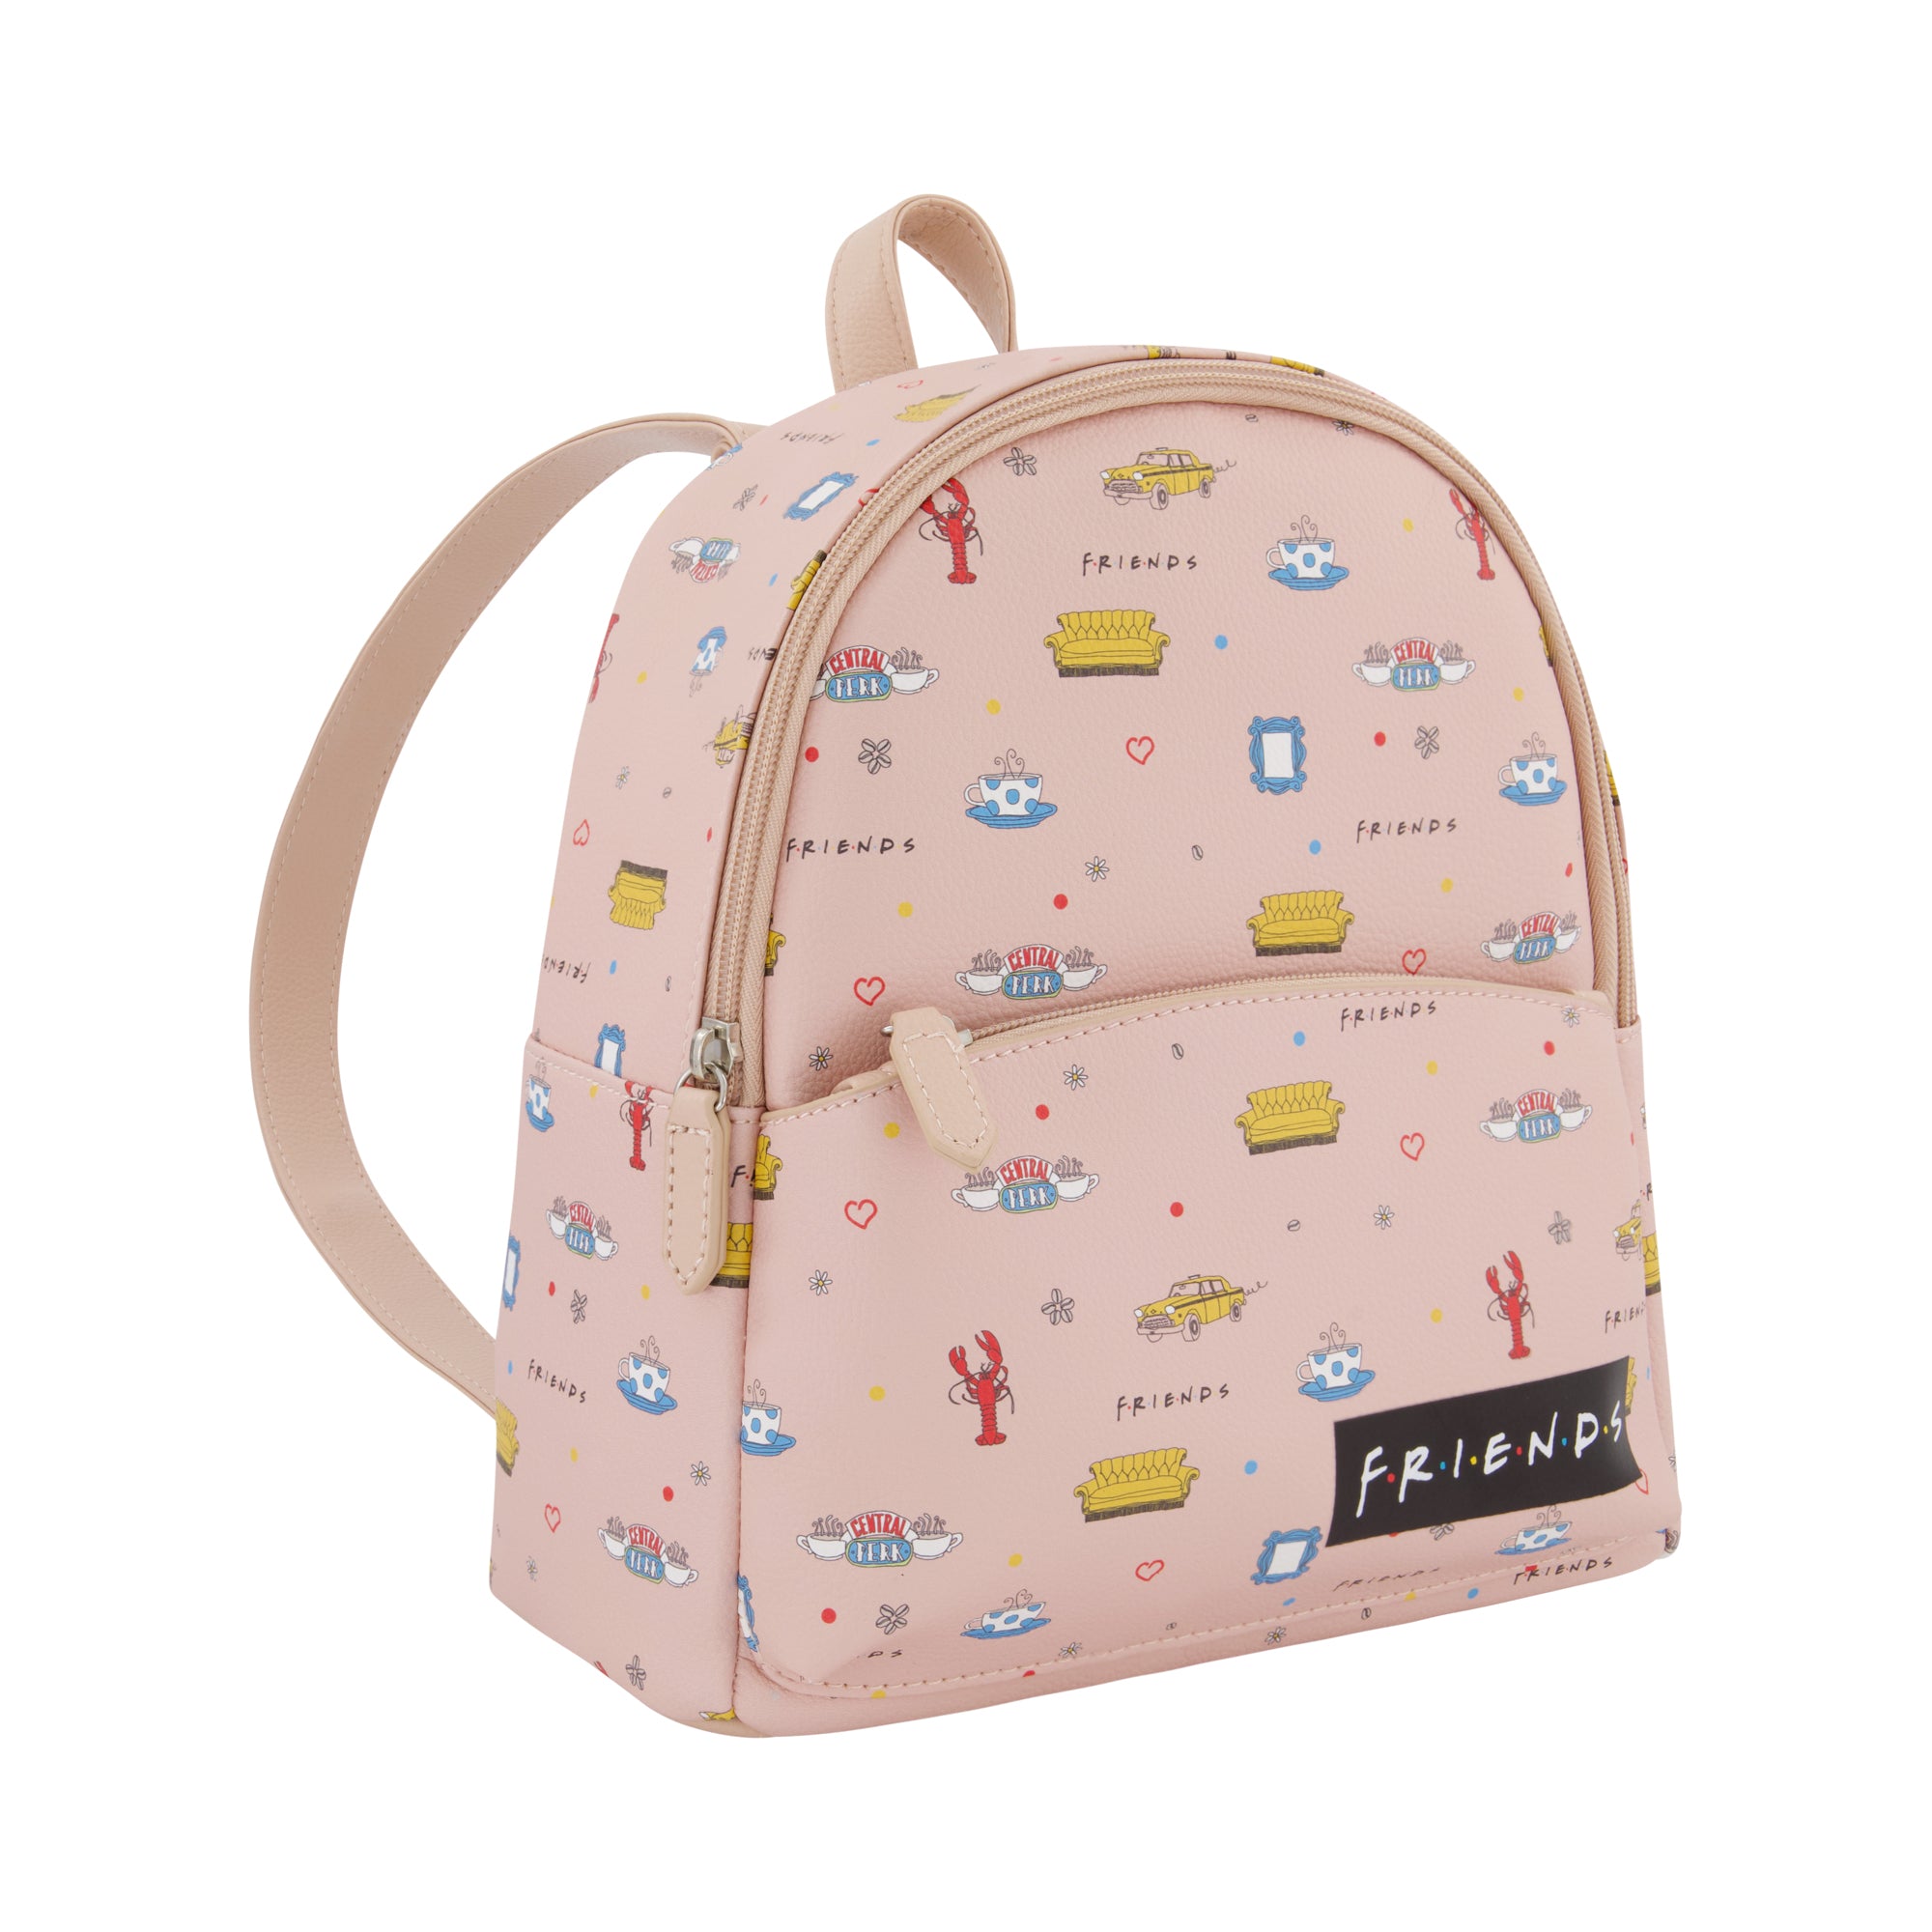 Backpack Kate Spade Pink in Plastic - 39469052